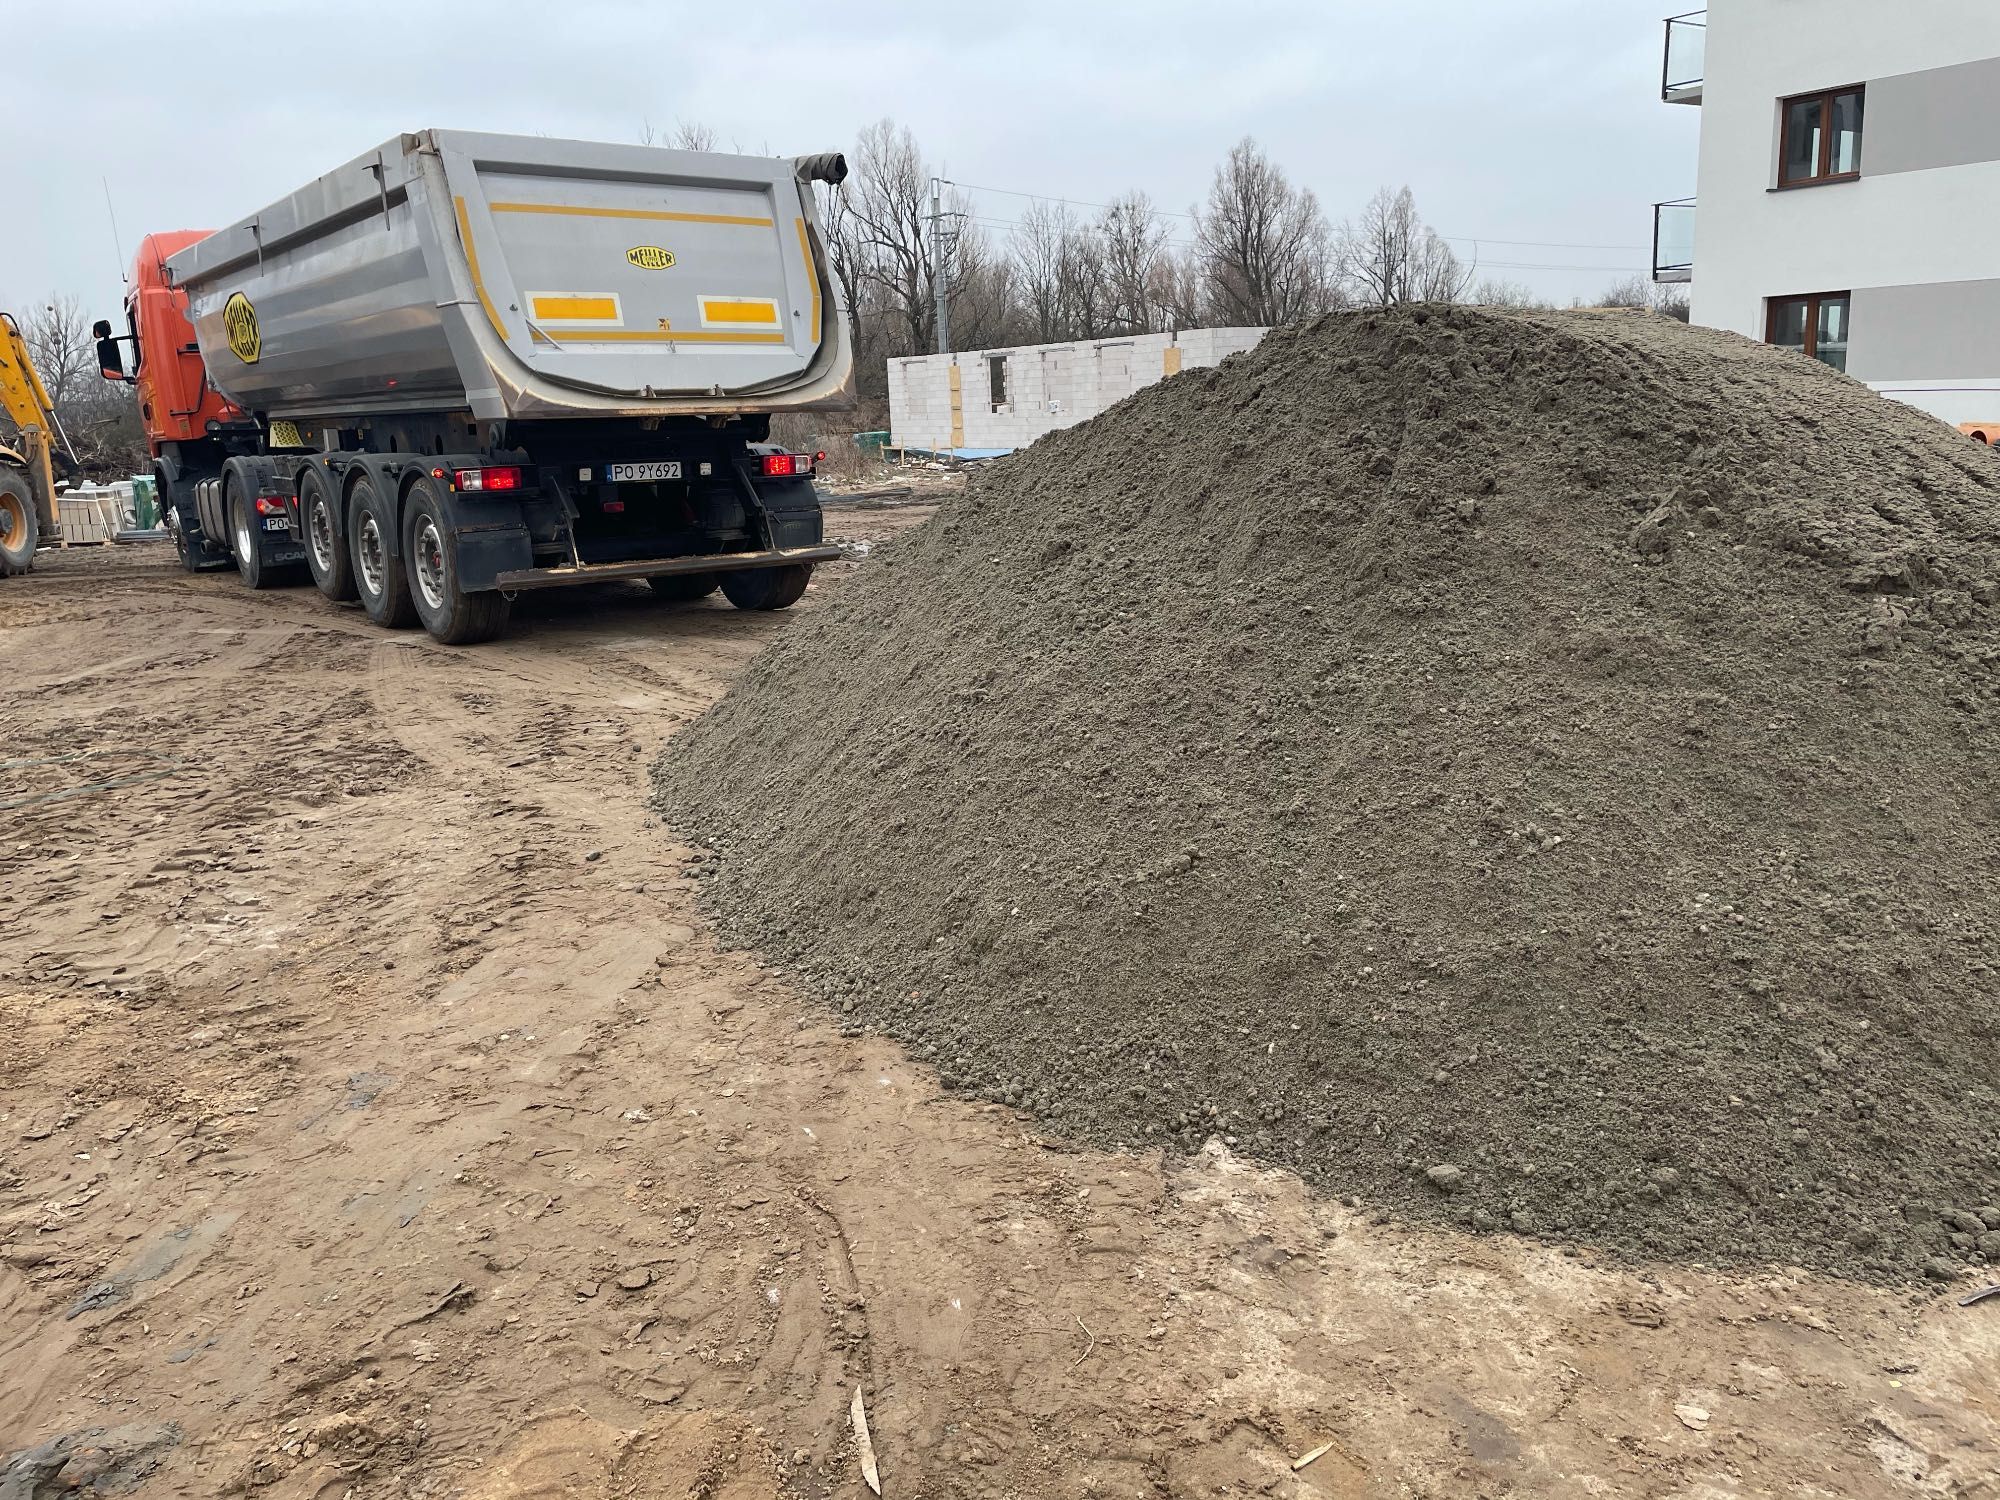 Beton towarowy beton suchy  betoniarnia transport wywrotkami Poznań